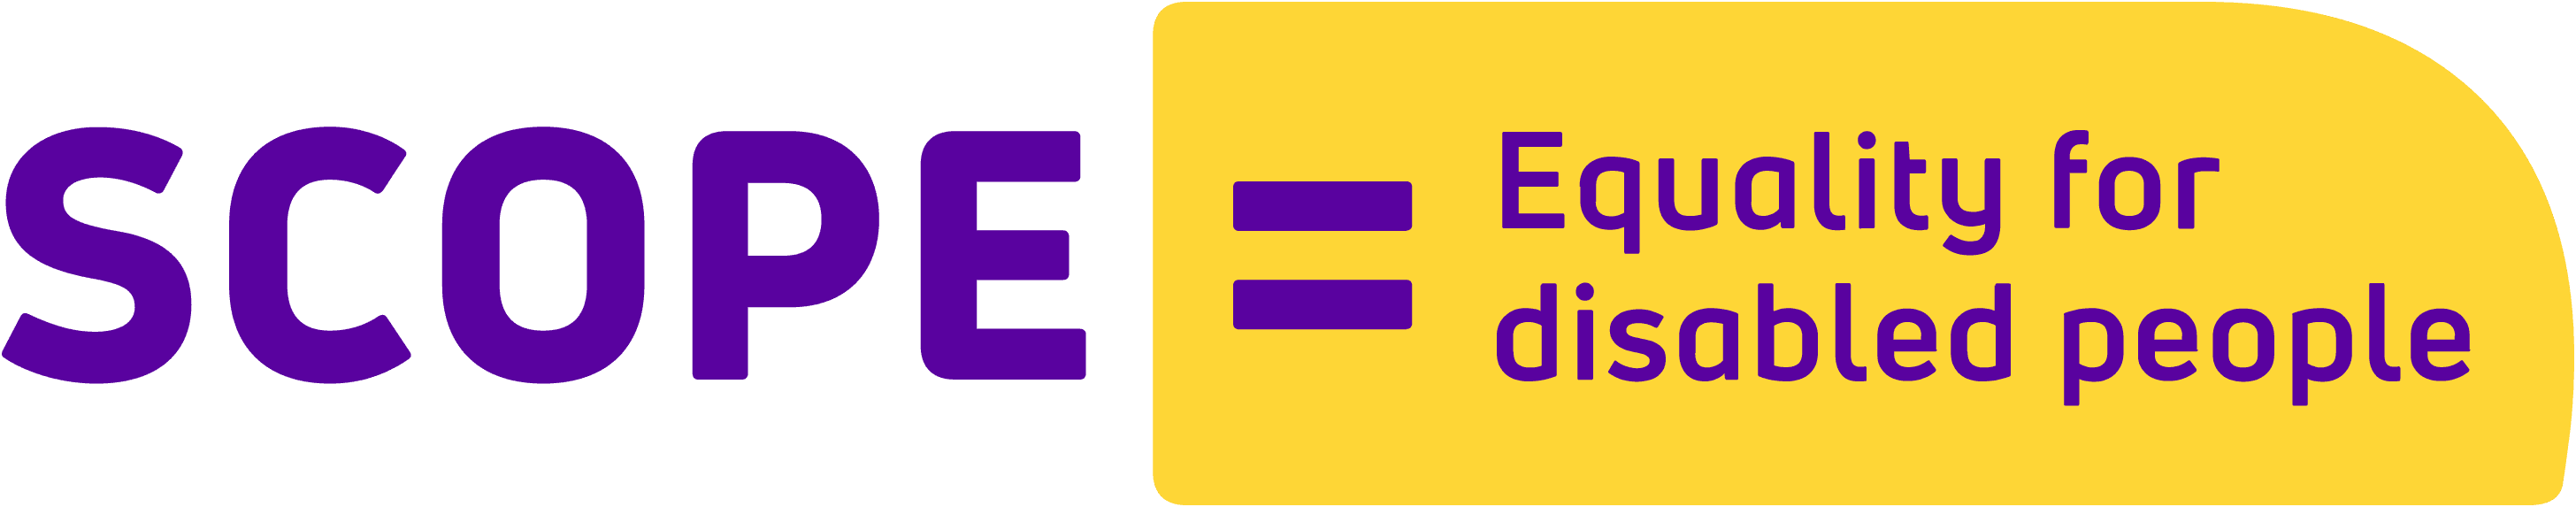 Логотип Scope UK с надписью «Scope», знак равенства, «Равенство для людей с ограниченными возможностями».